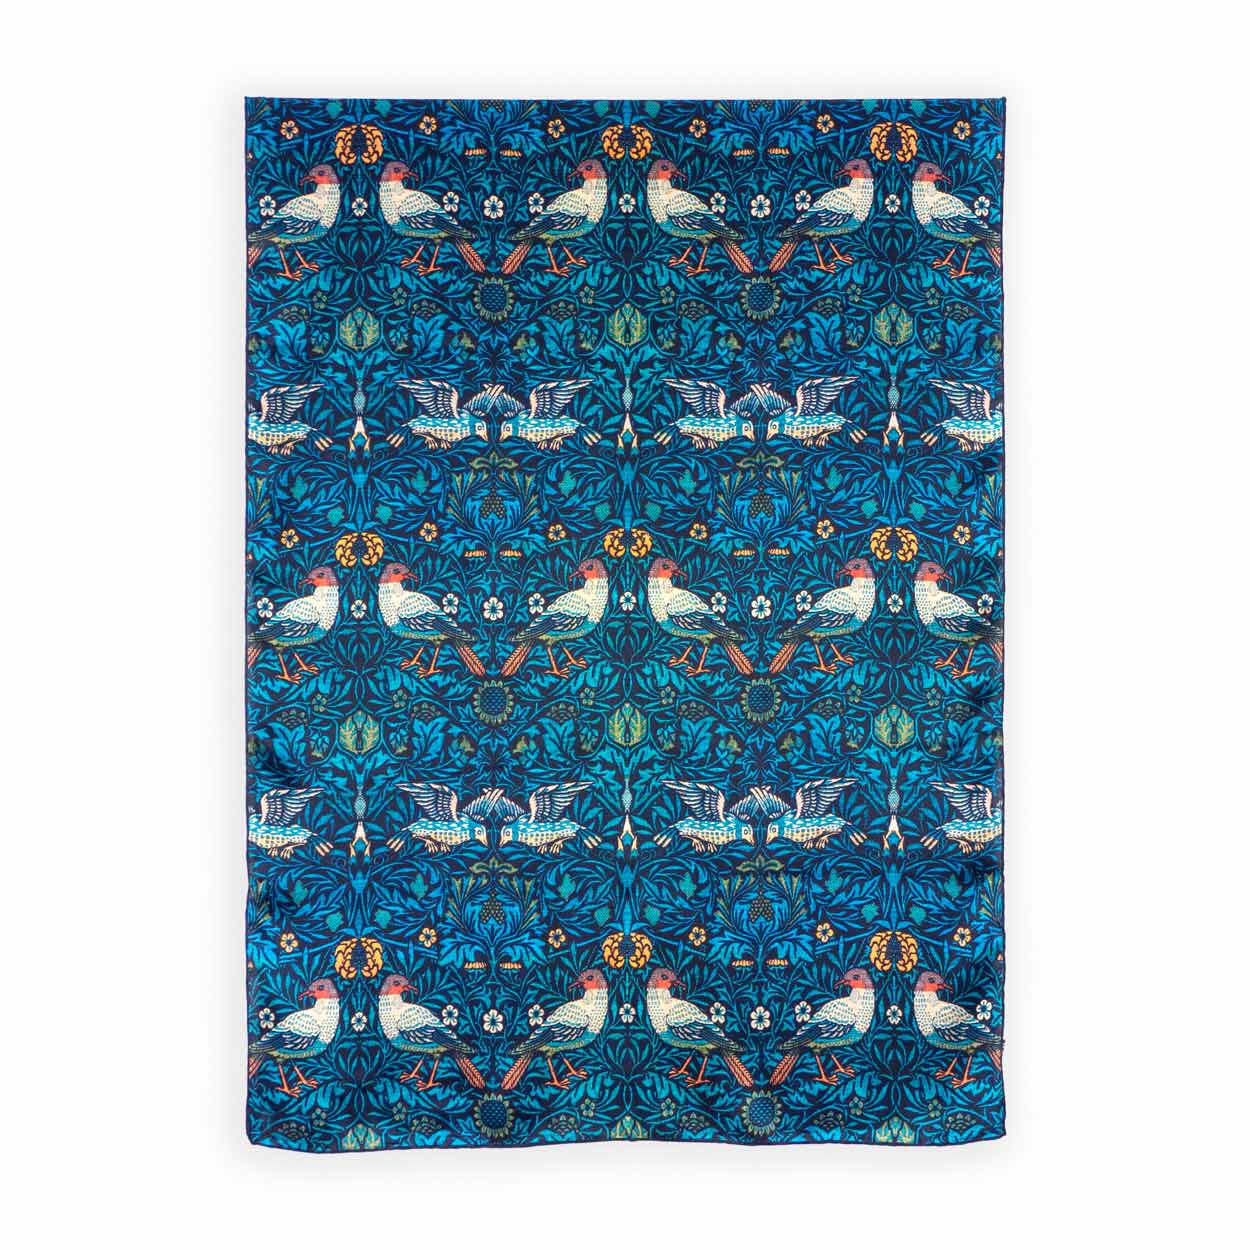 Pañuelo azul grande con pájaros y flores